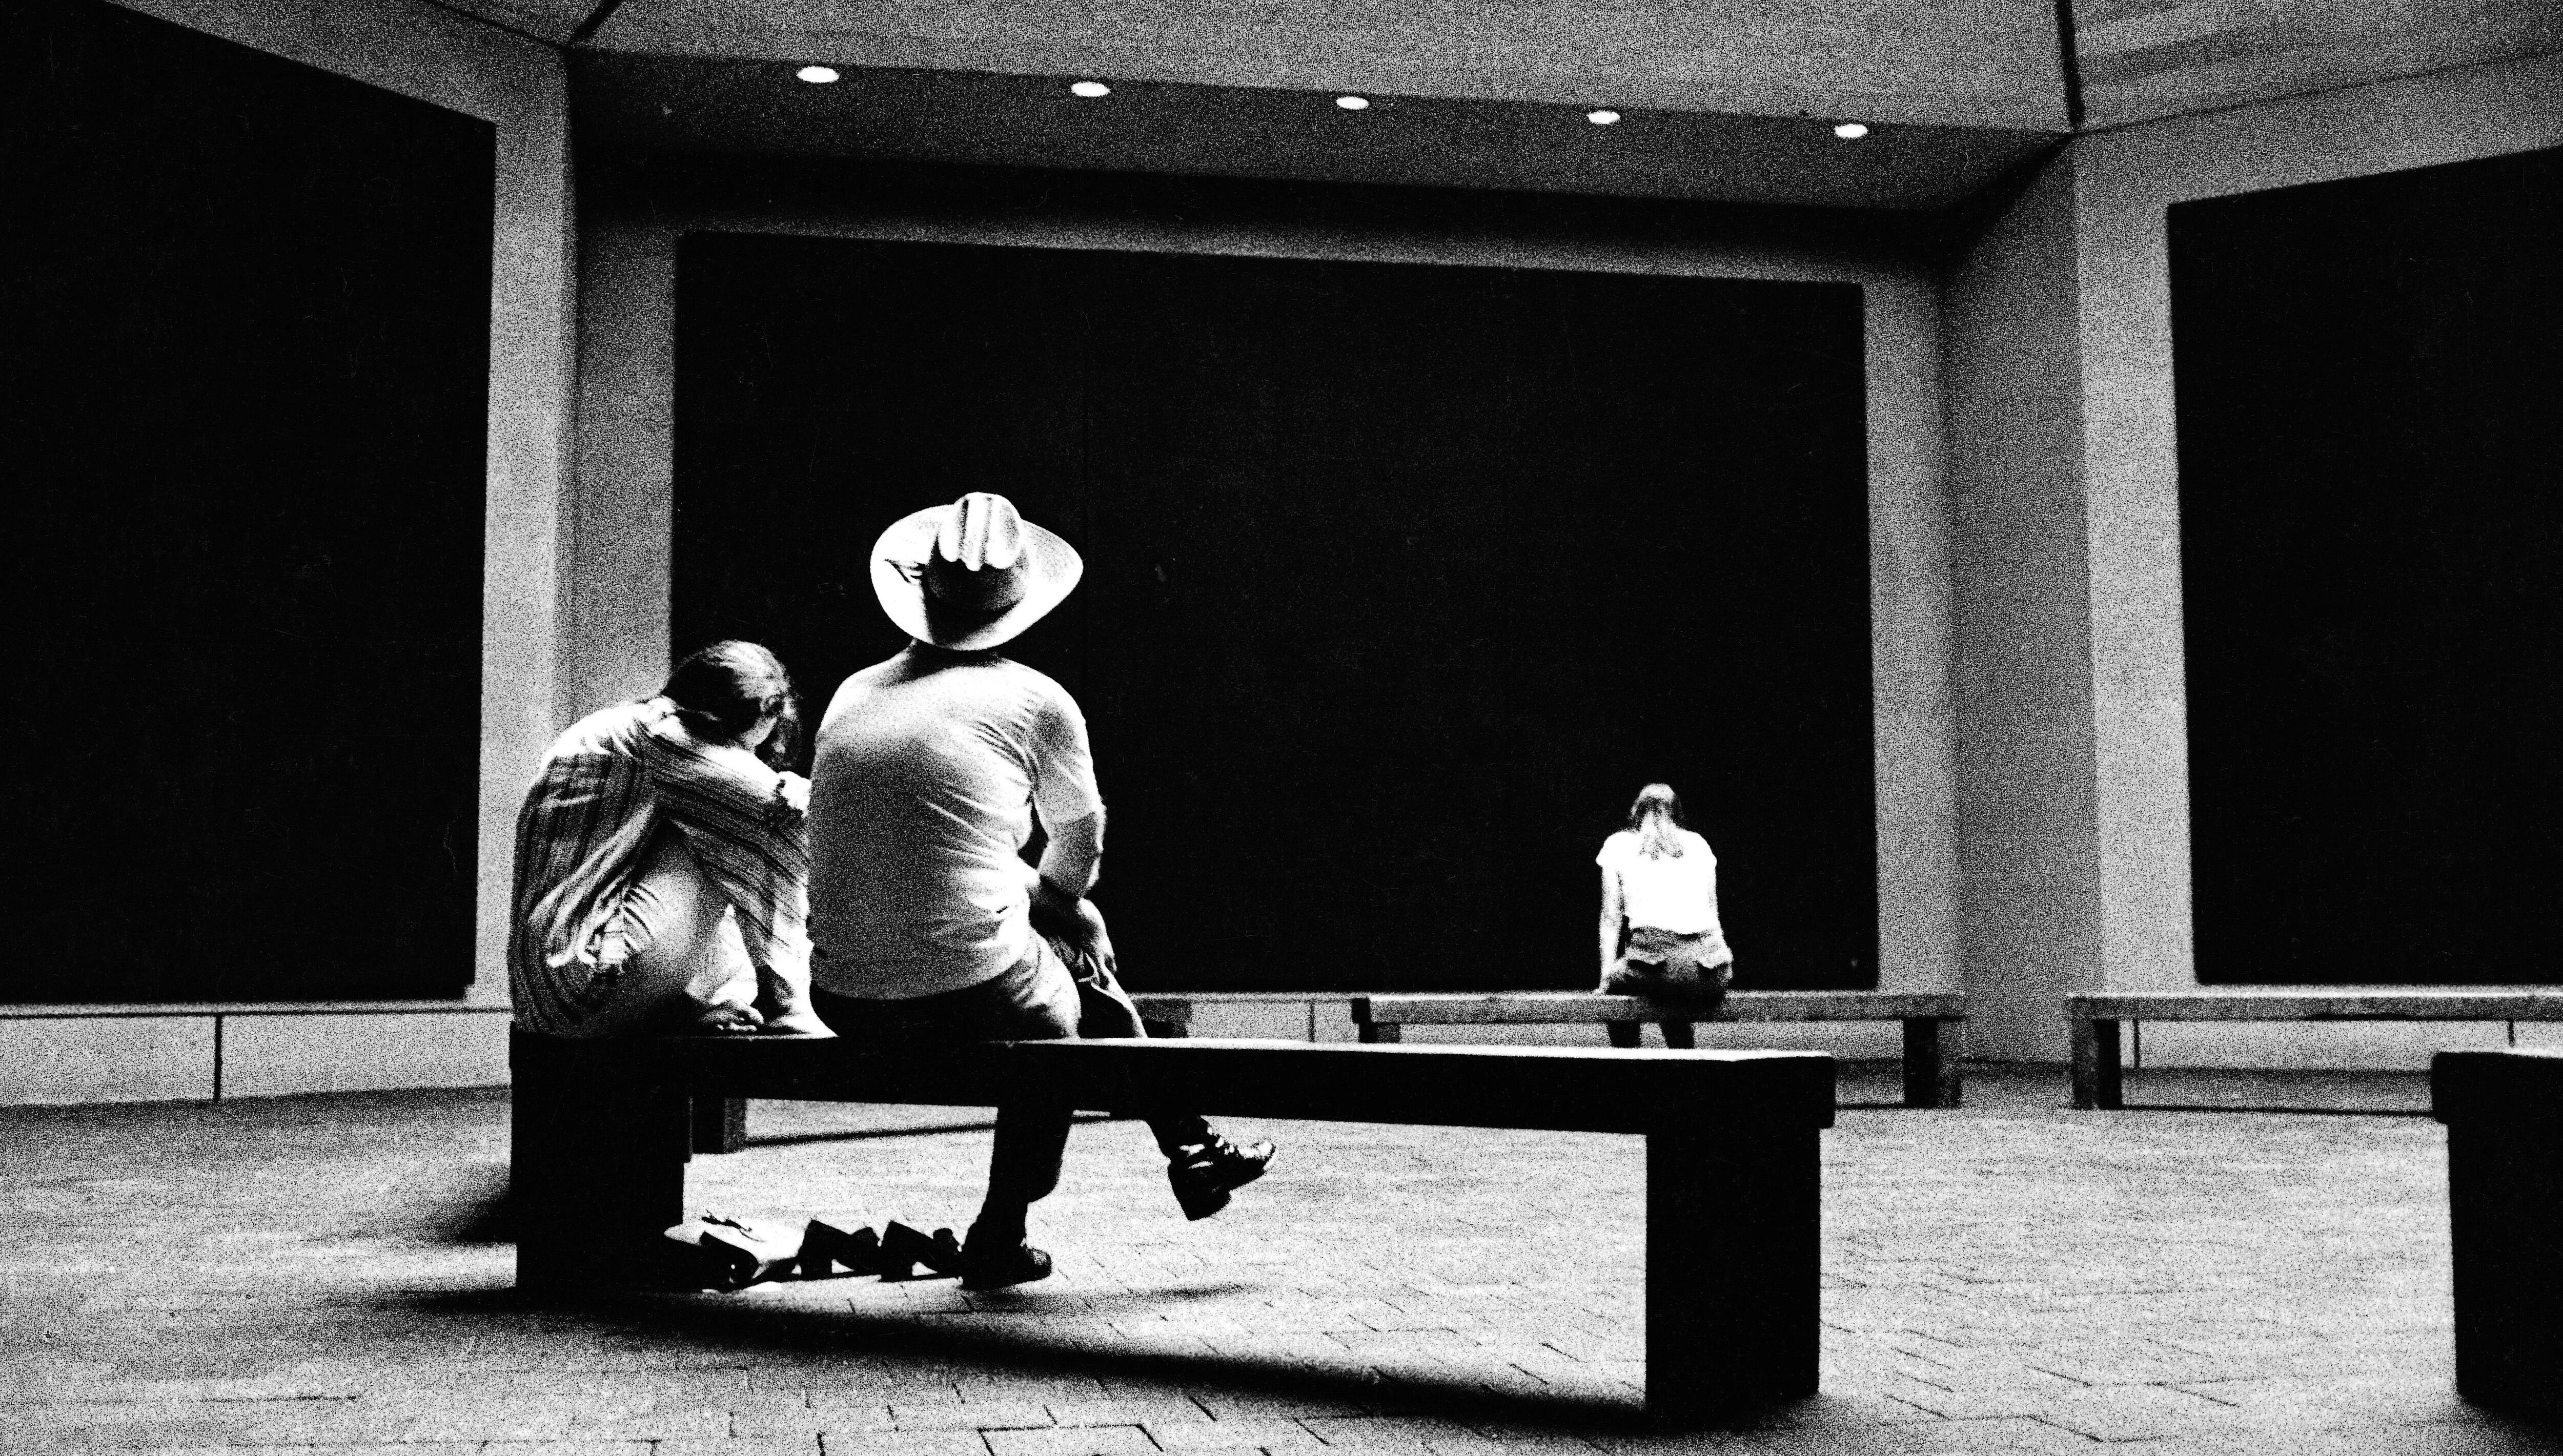 Espectadores en la Capilla Rothko de Houston, que contiene 14 de sus pinturas negras, en una imagen de 1977.